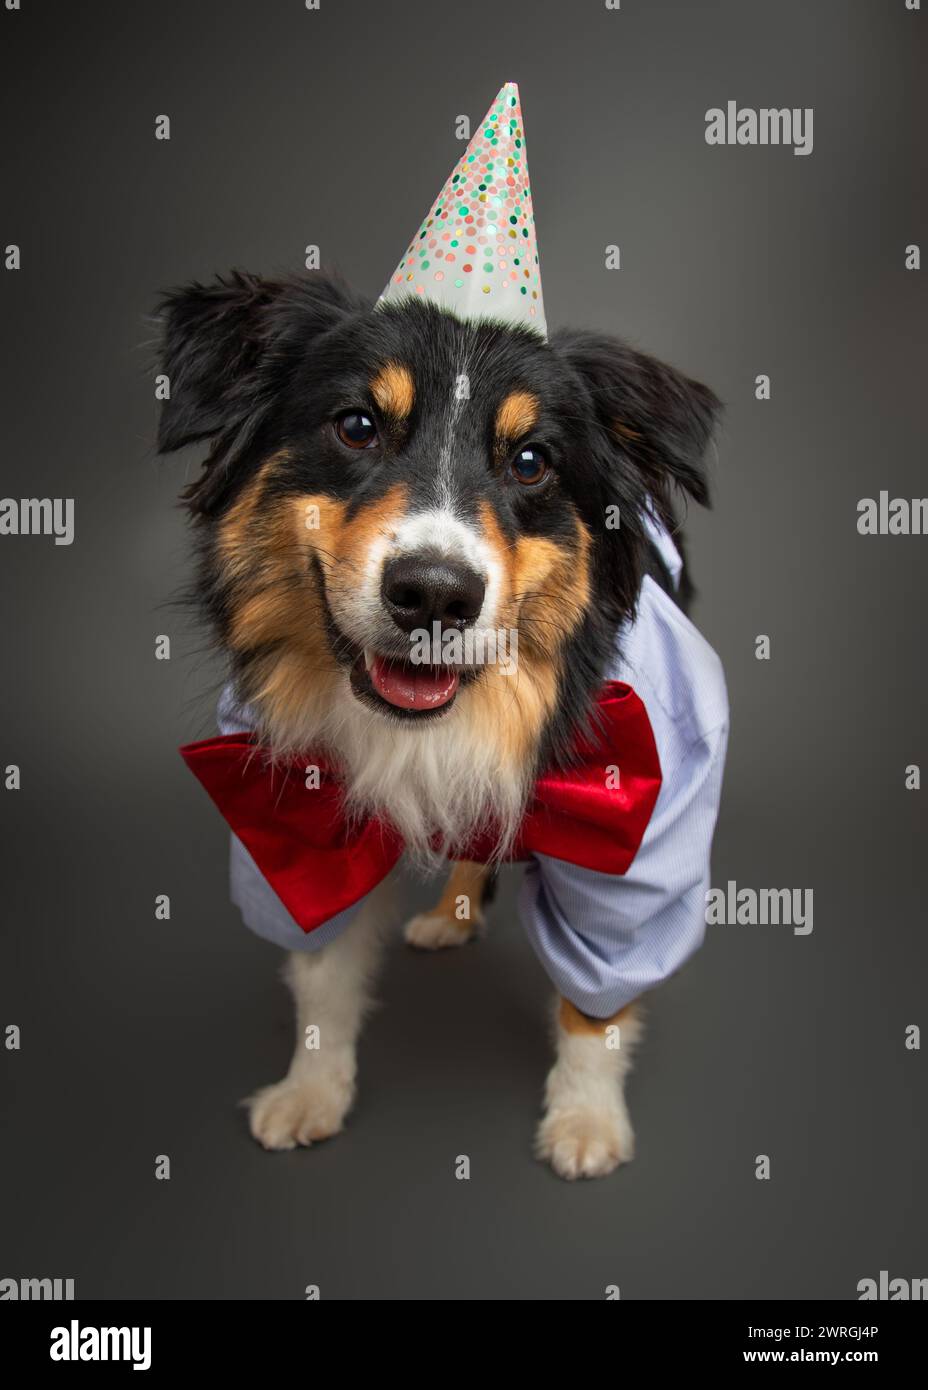 Porträt eines Black Tri Australian Shepherd Hundes mit Partymütze, Fliege, Weste und Hemd Stockfoto